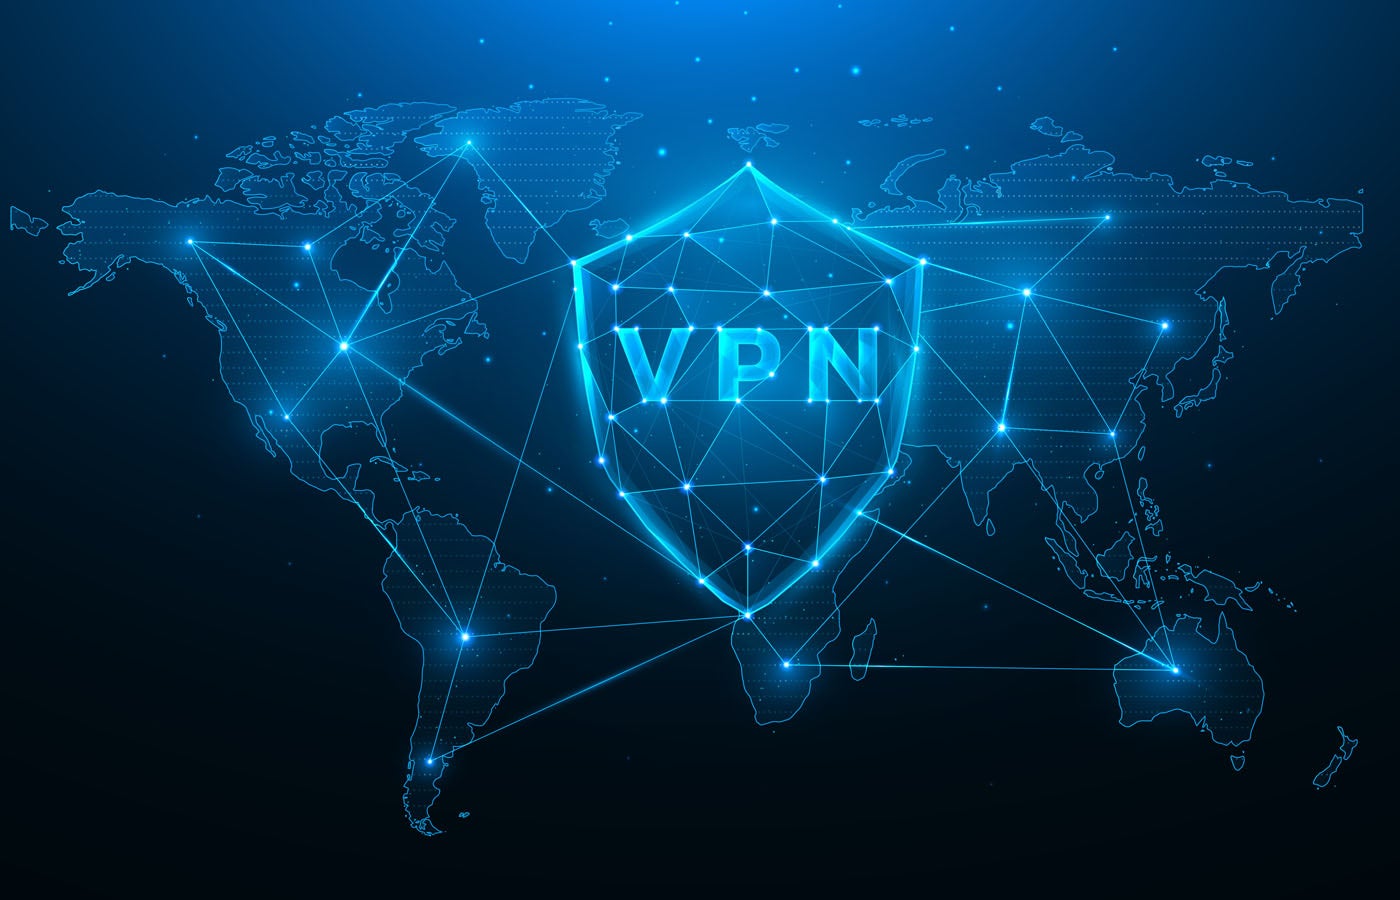 TechRepublic Review Methodology for VPN